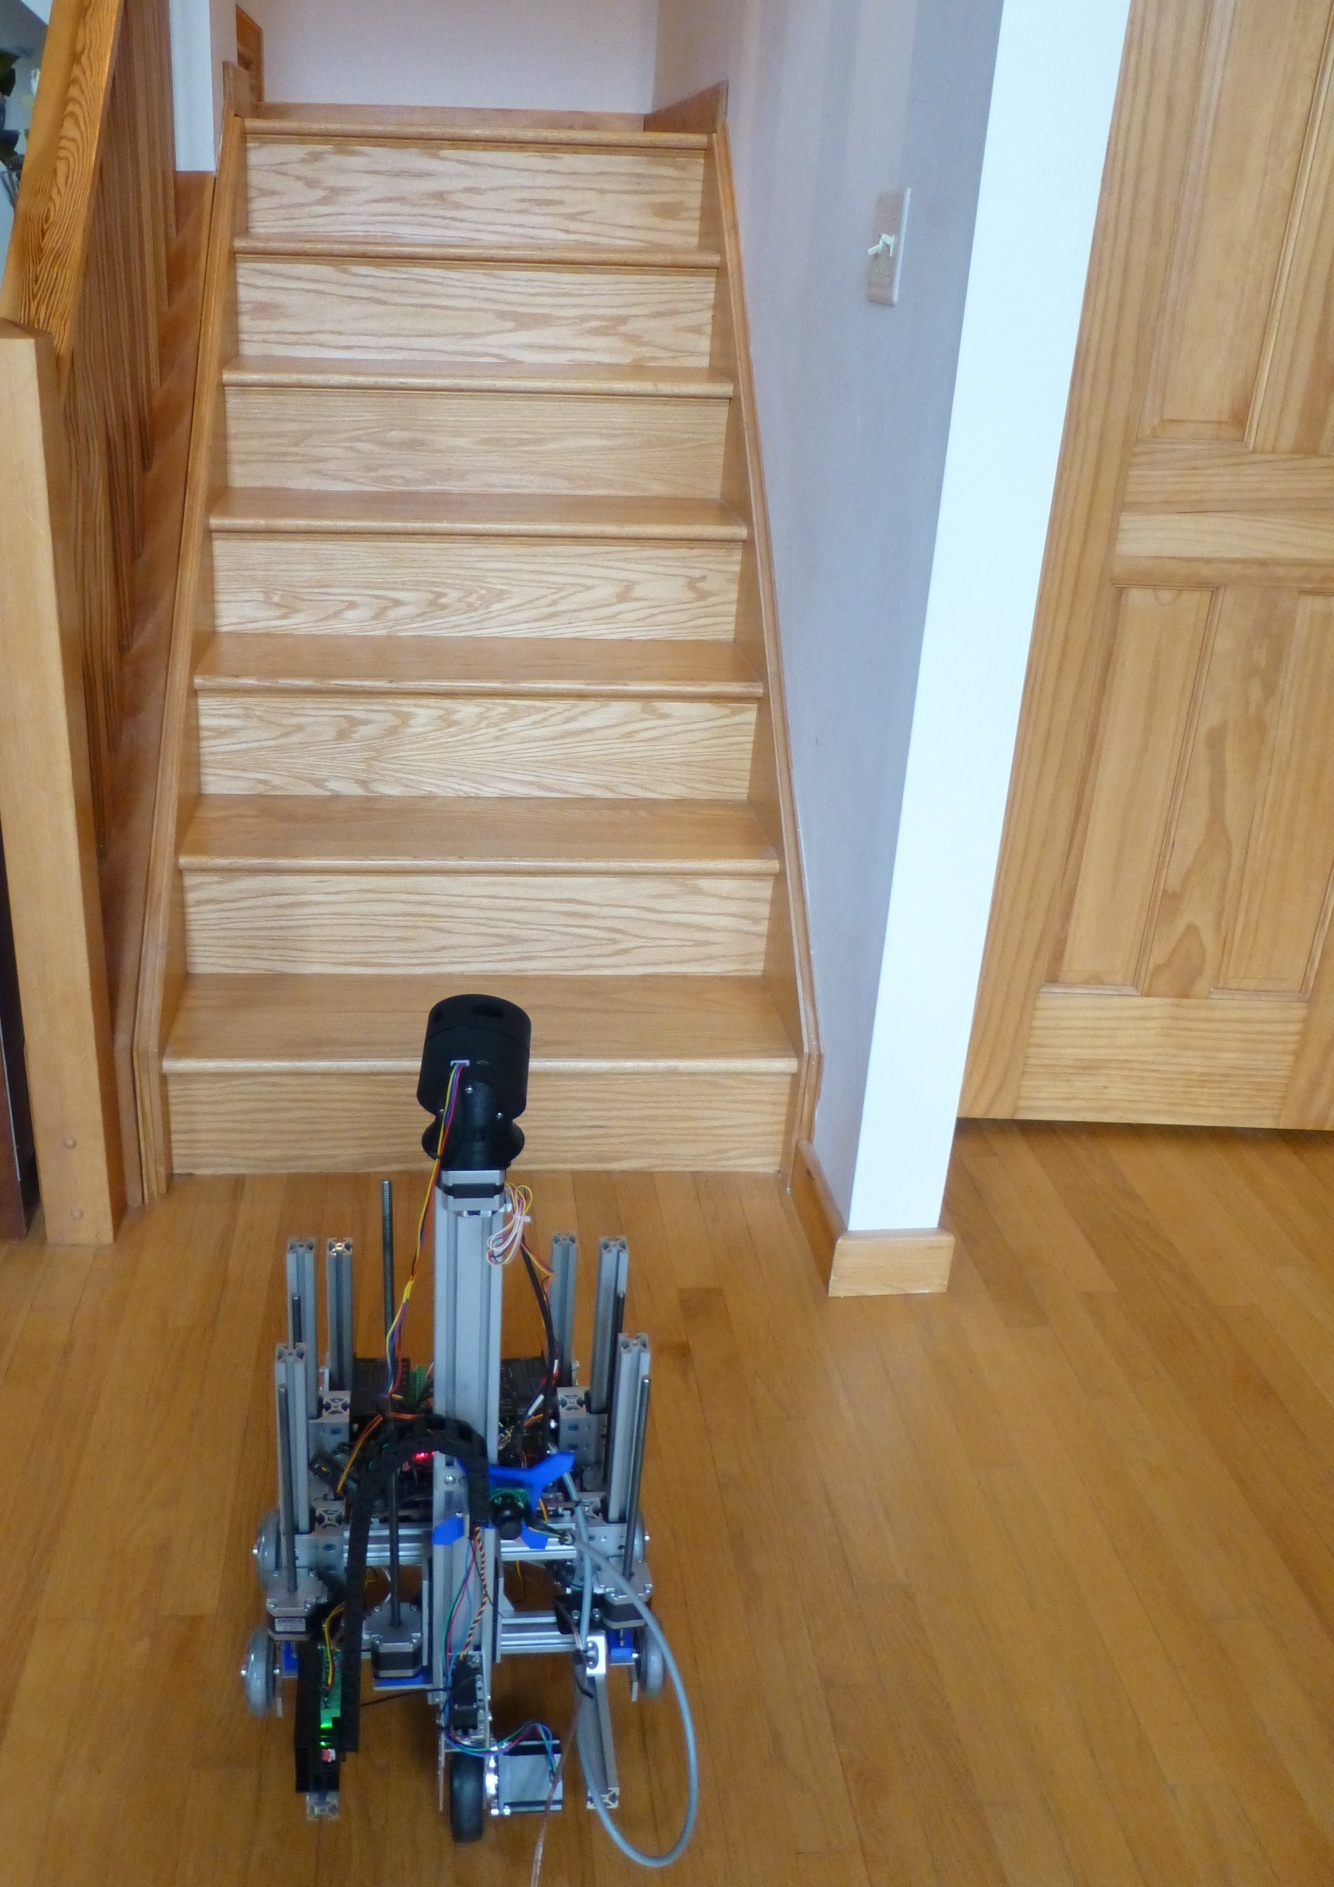 Рис. 6. Робот AUR2 после выполнения главного задания: уверенного подъема на лестницу и благополучного спуска с нее. Батарей нет, питание через силовой провод